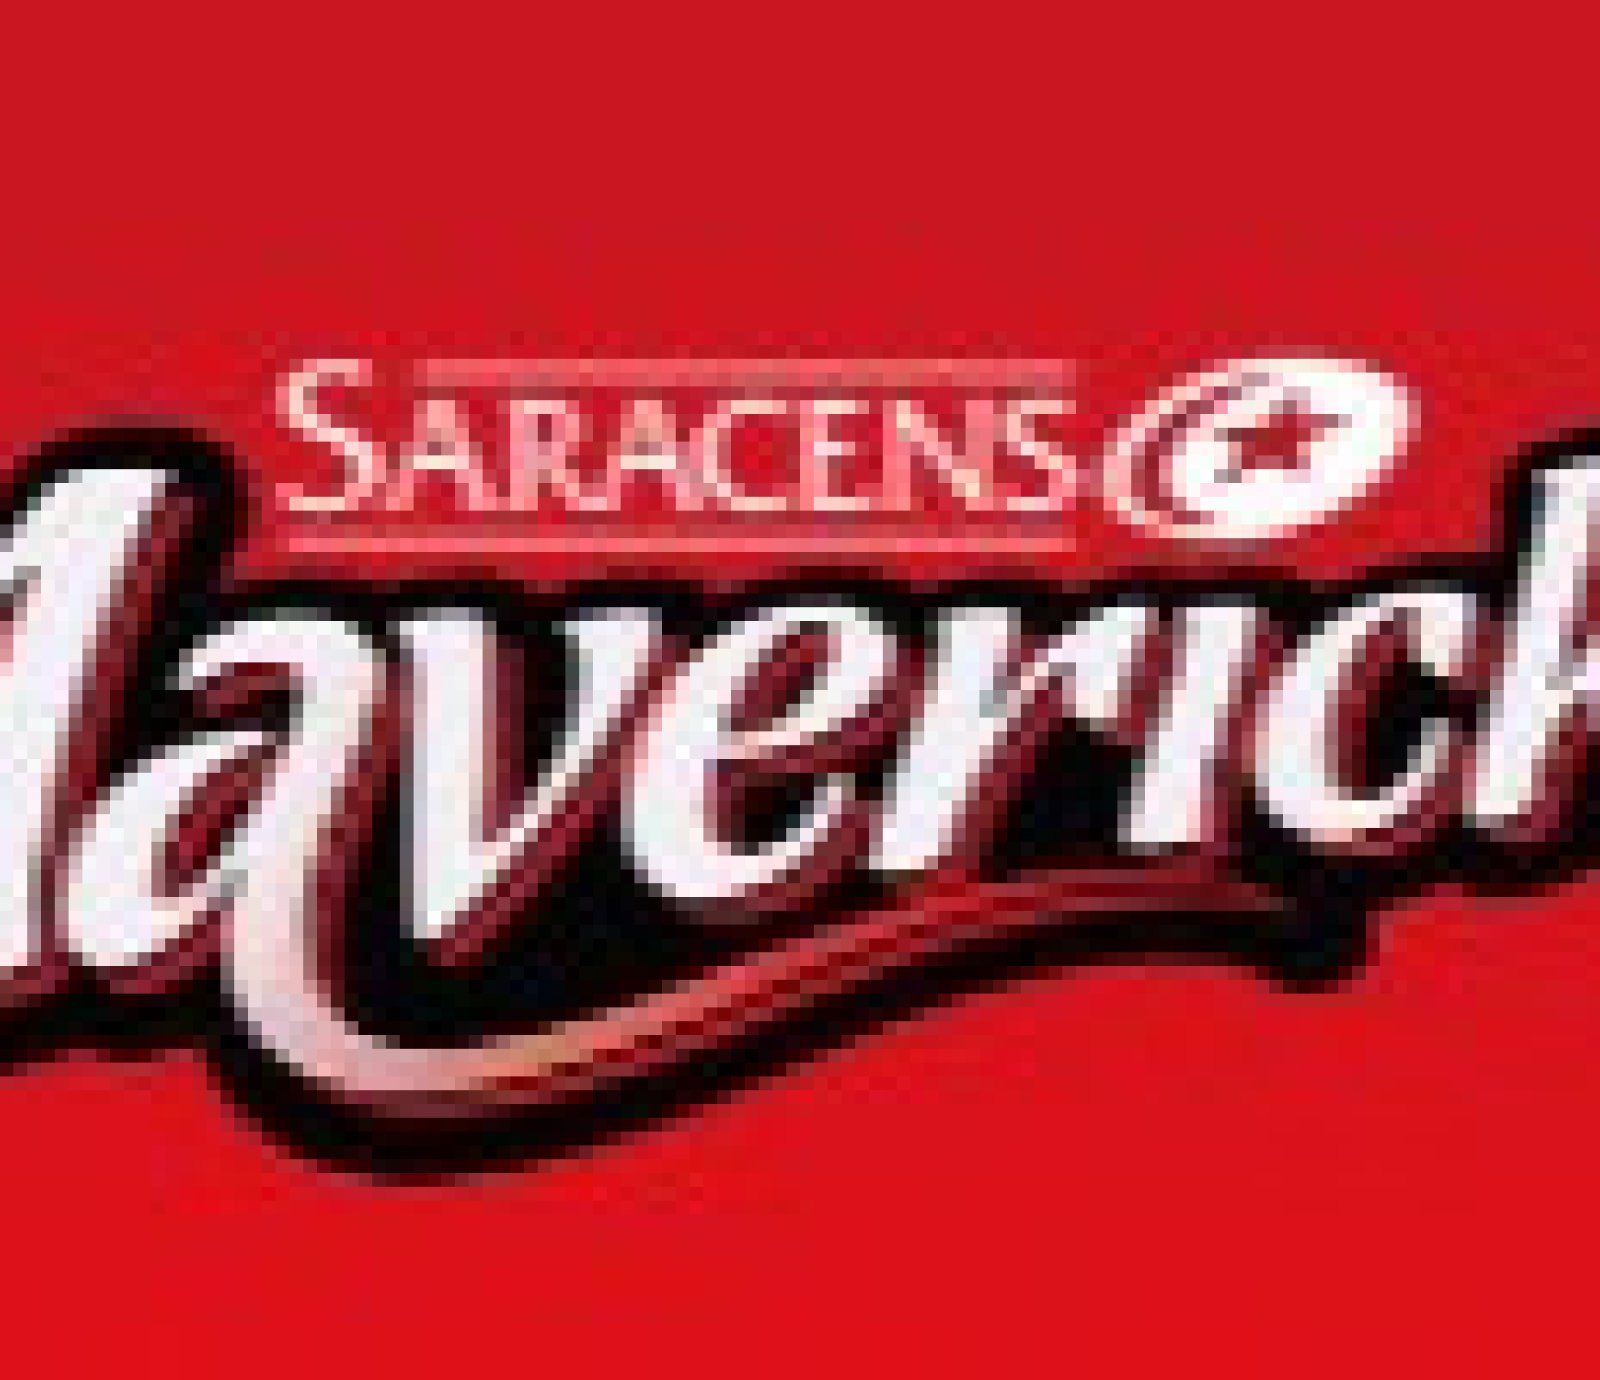 Saracens Mavericks